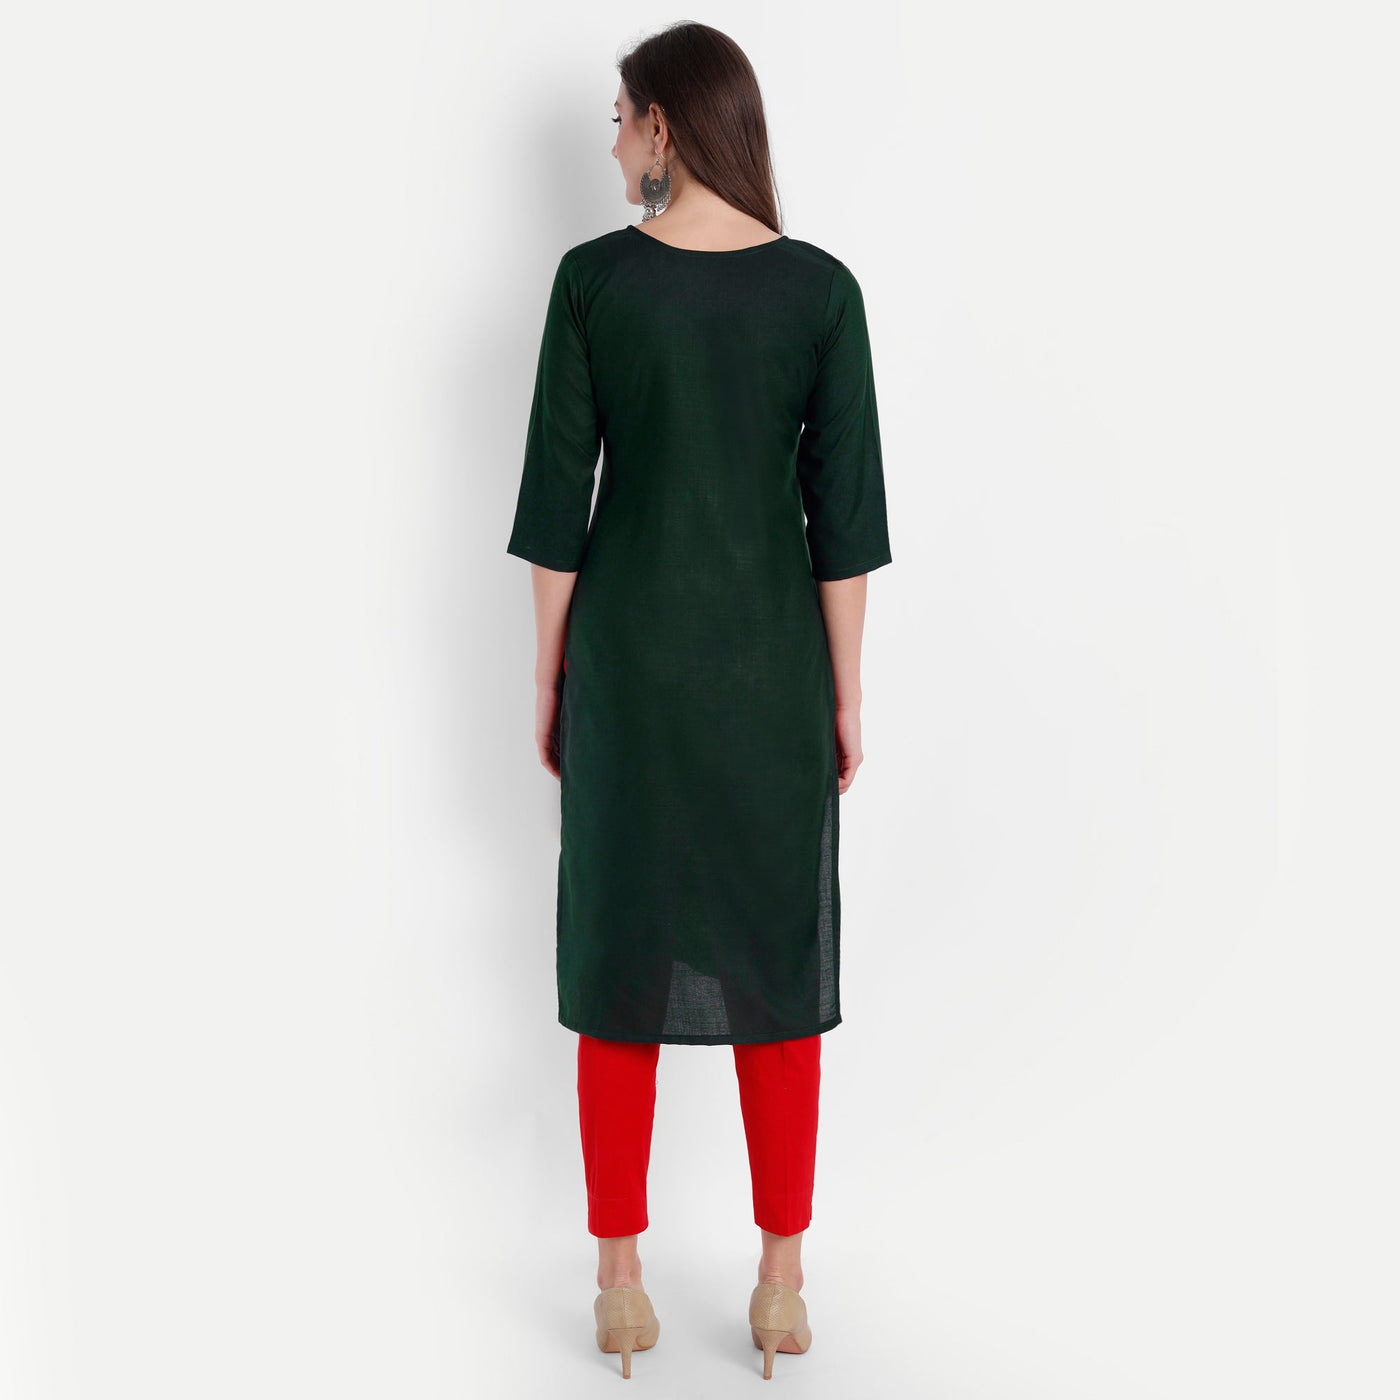 Women's Green Cotton Kurti - Label Shaurya Sanadhya